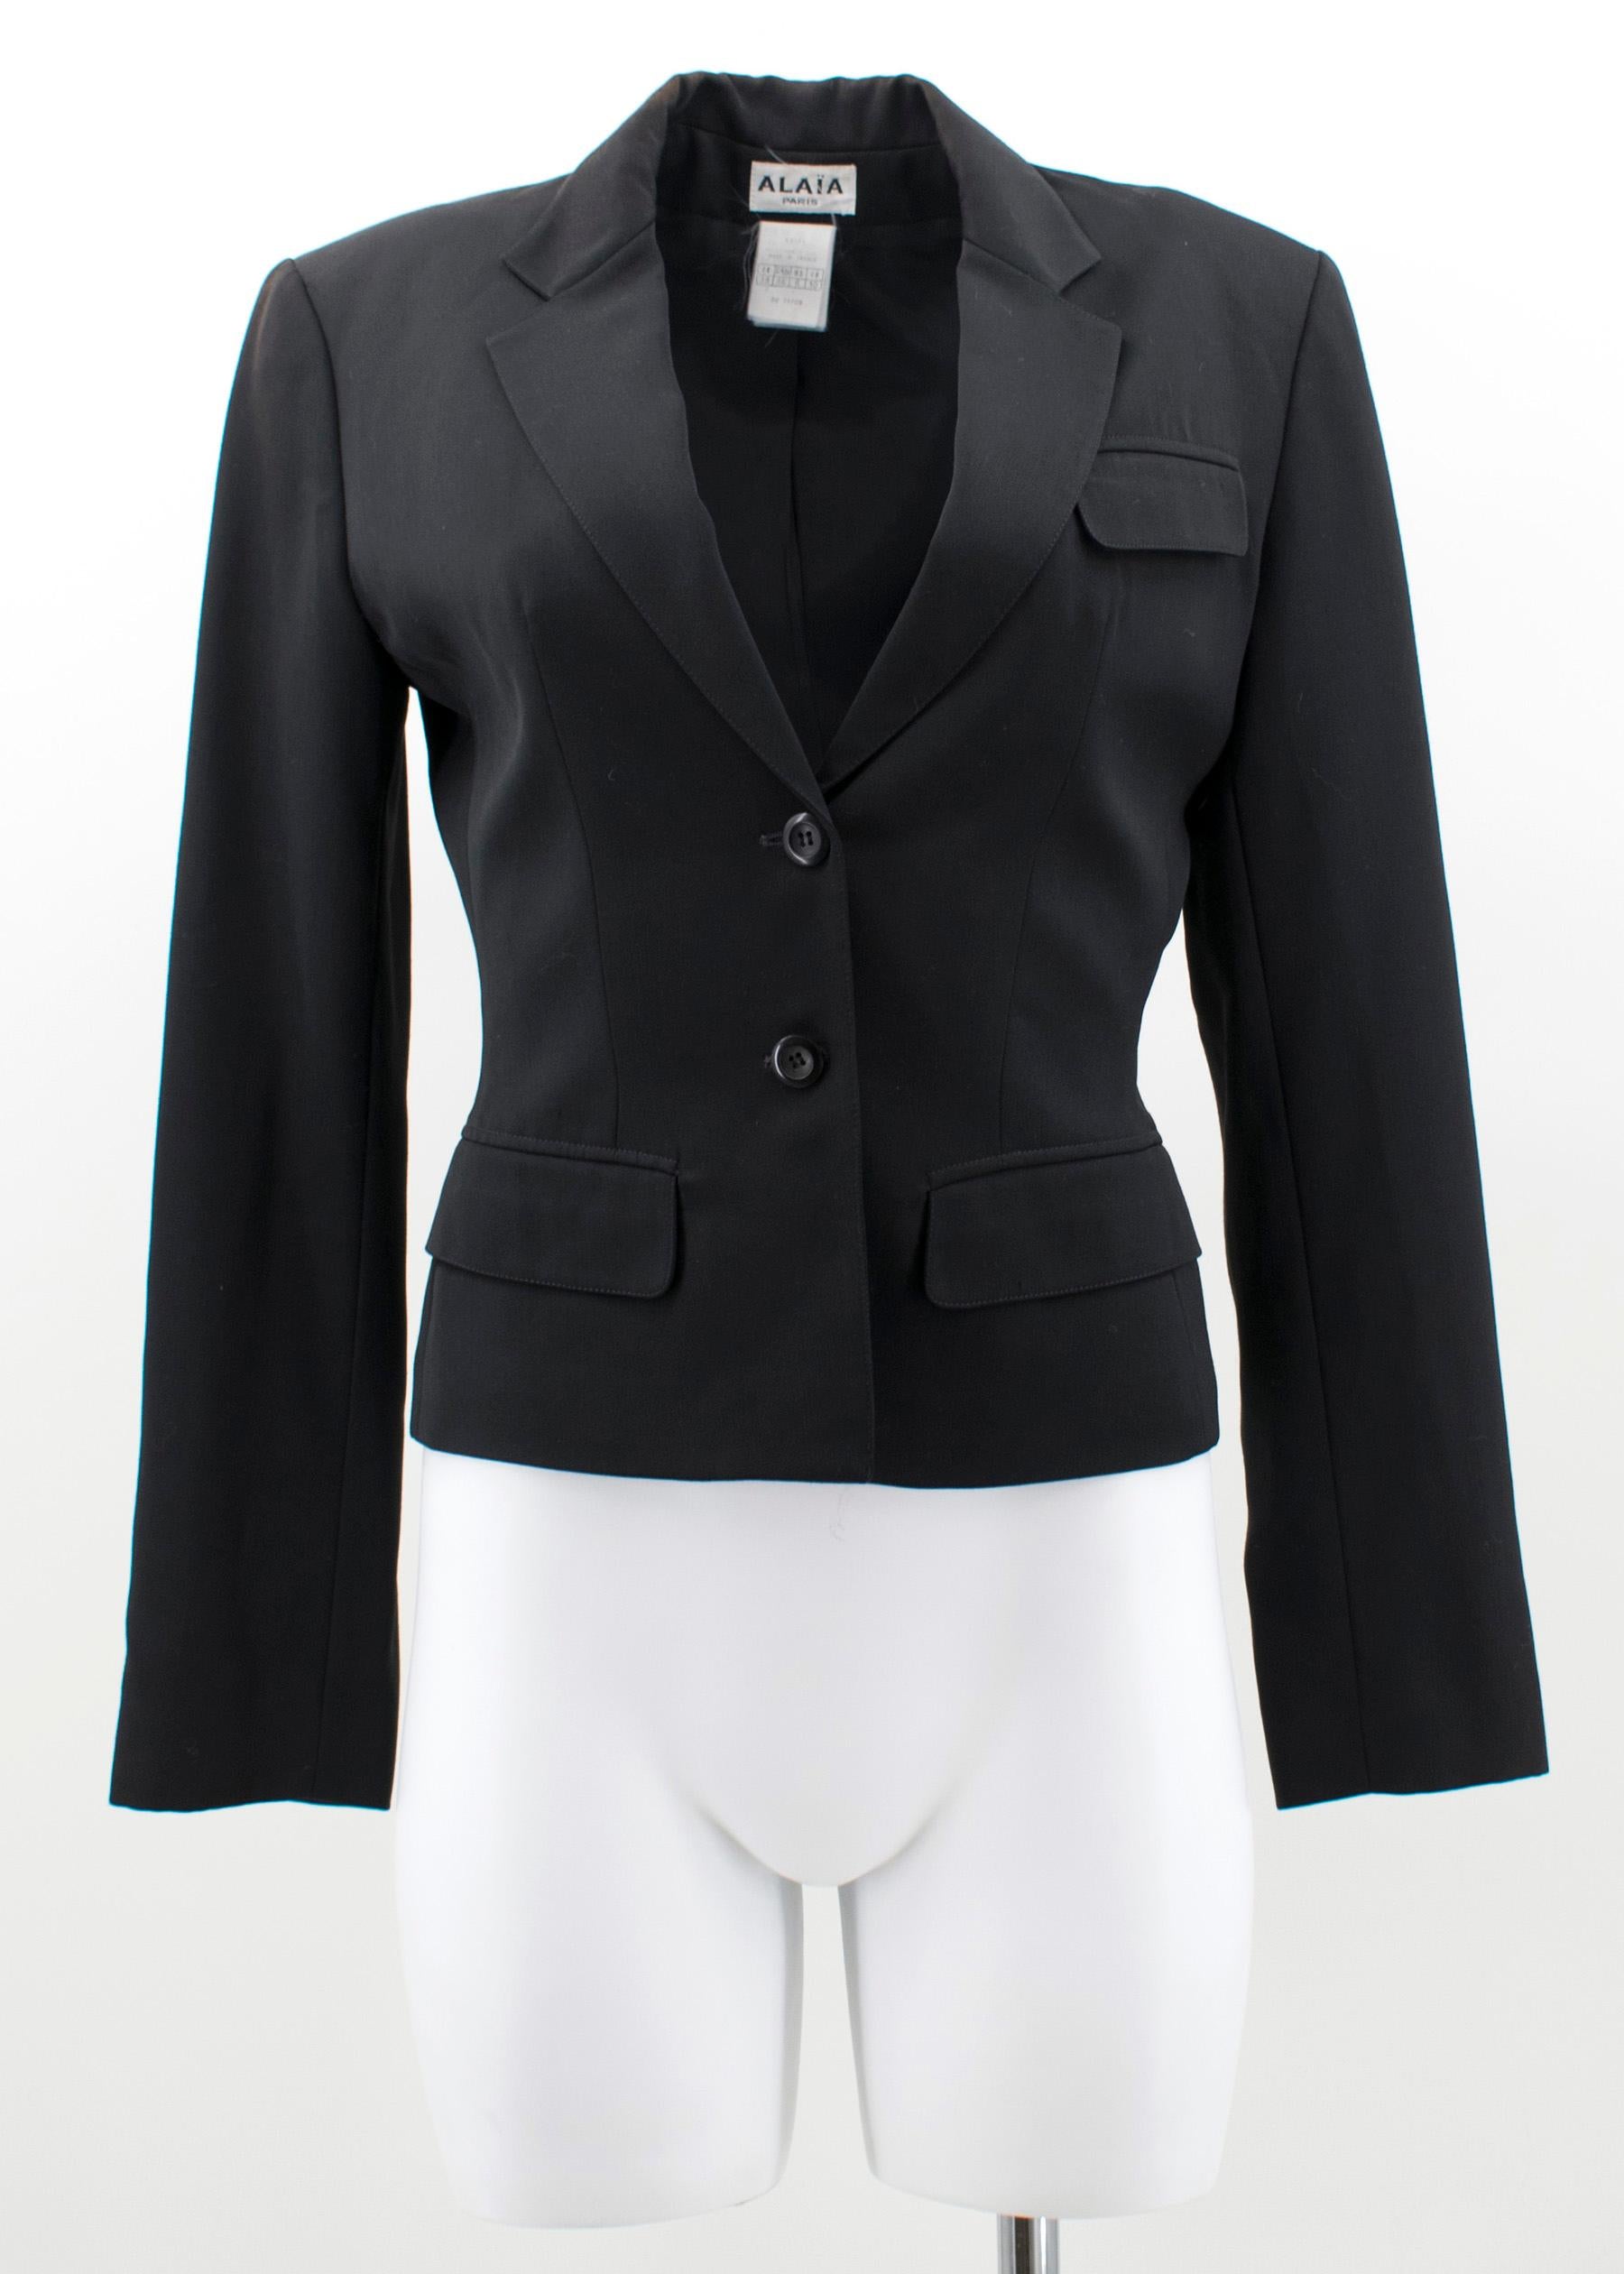 Alaia Black Suit US 4 2